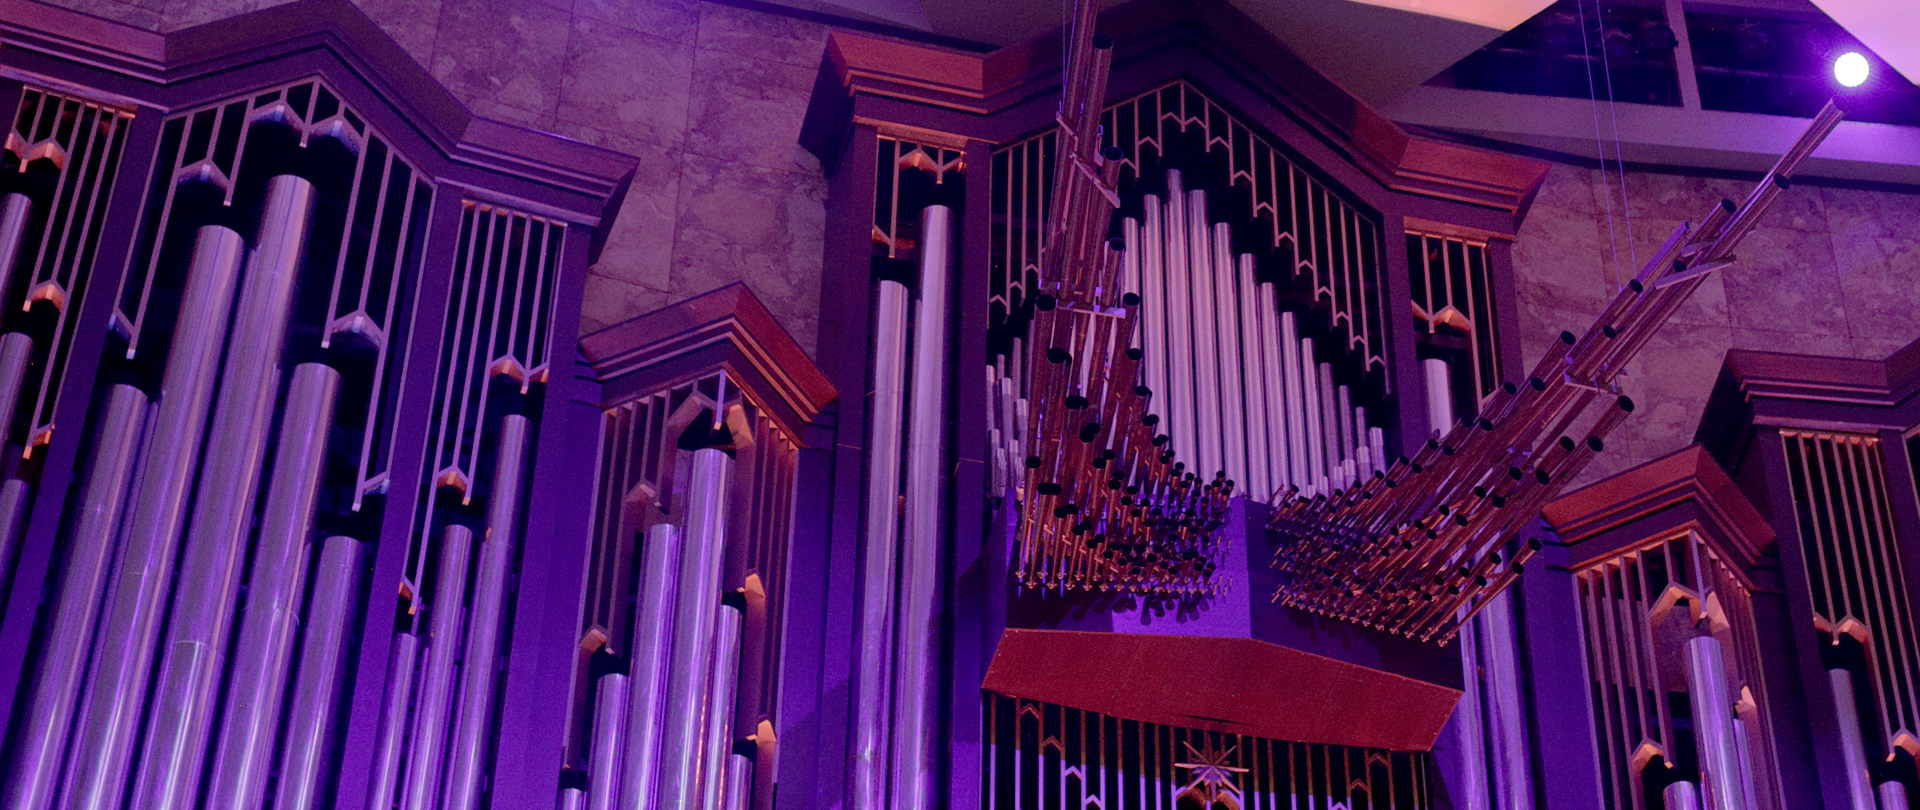 Organ Concerts
